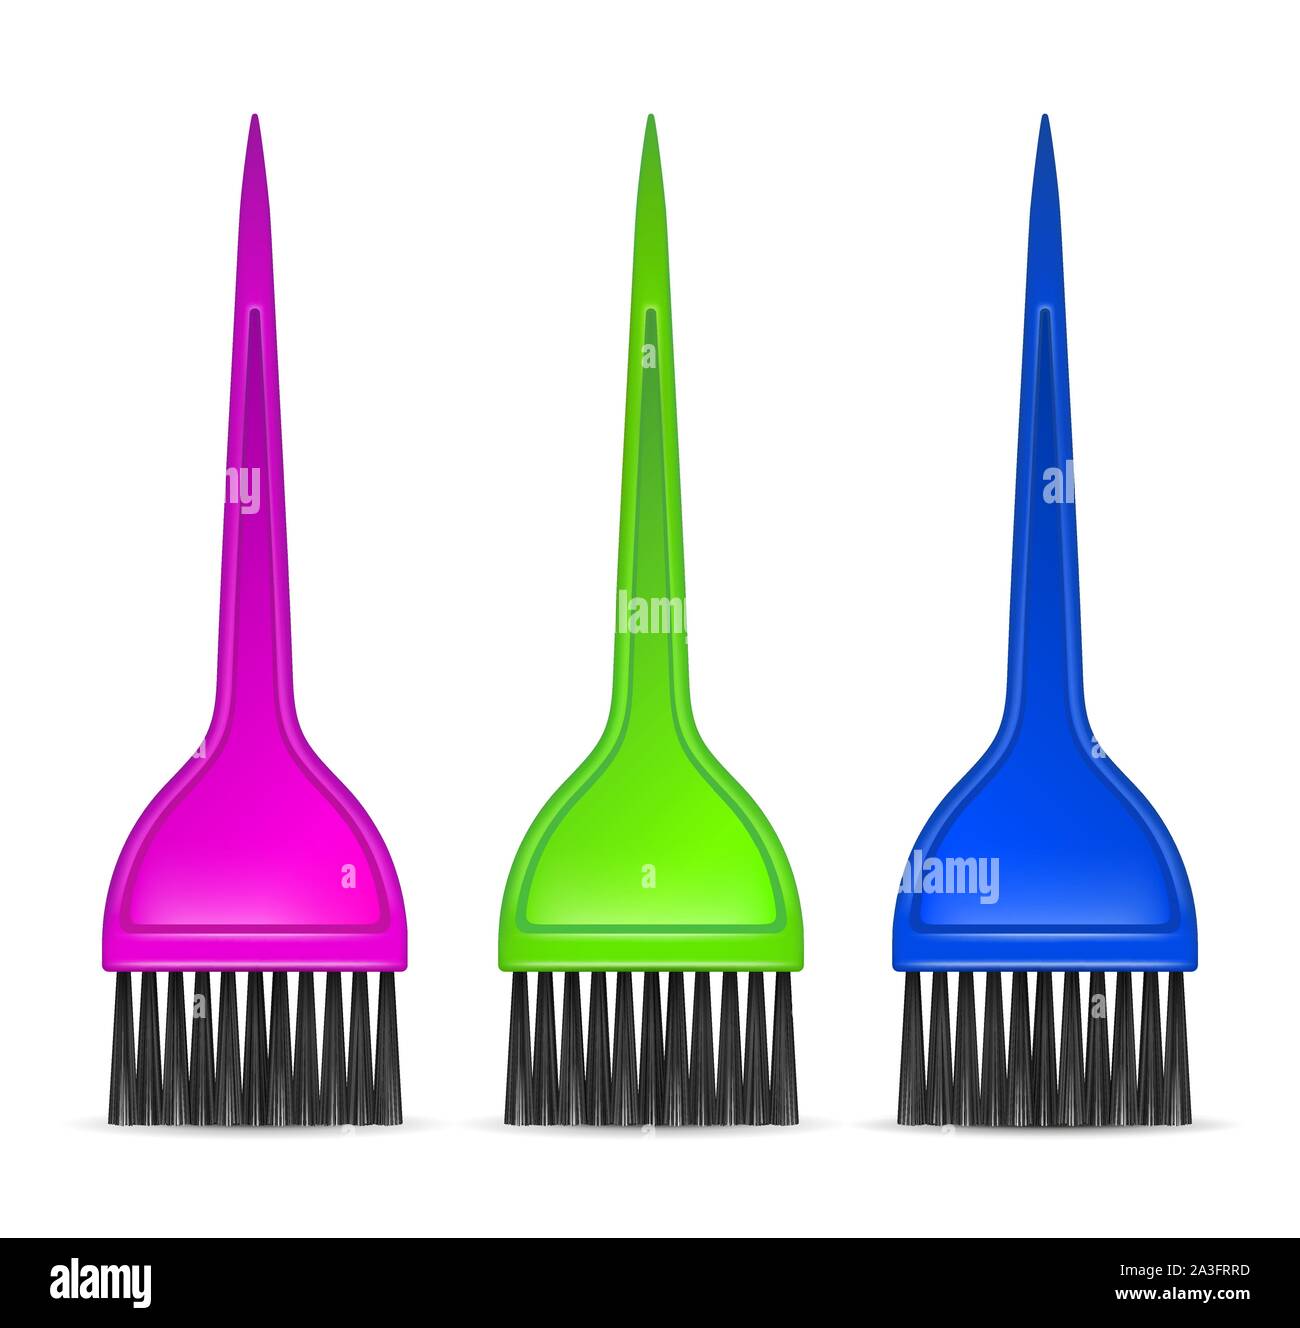 https://c8.alamy.com/compes/2a3frrd/cepillos-profesionales-para-el-cabello-y-el-tinte-del-color-de-mezcla-kit-de-cepillo-de-doble-cara-color-de-cabello-aplicador-para-salon-aclaradores-para-el-cabello-tenido-colores-rosa-verde-azul-2a3frrd.jpg